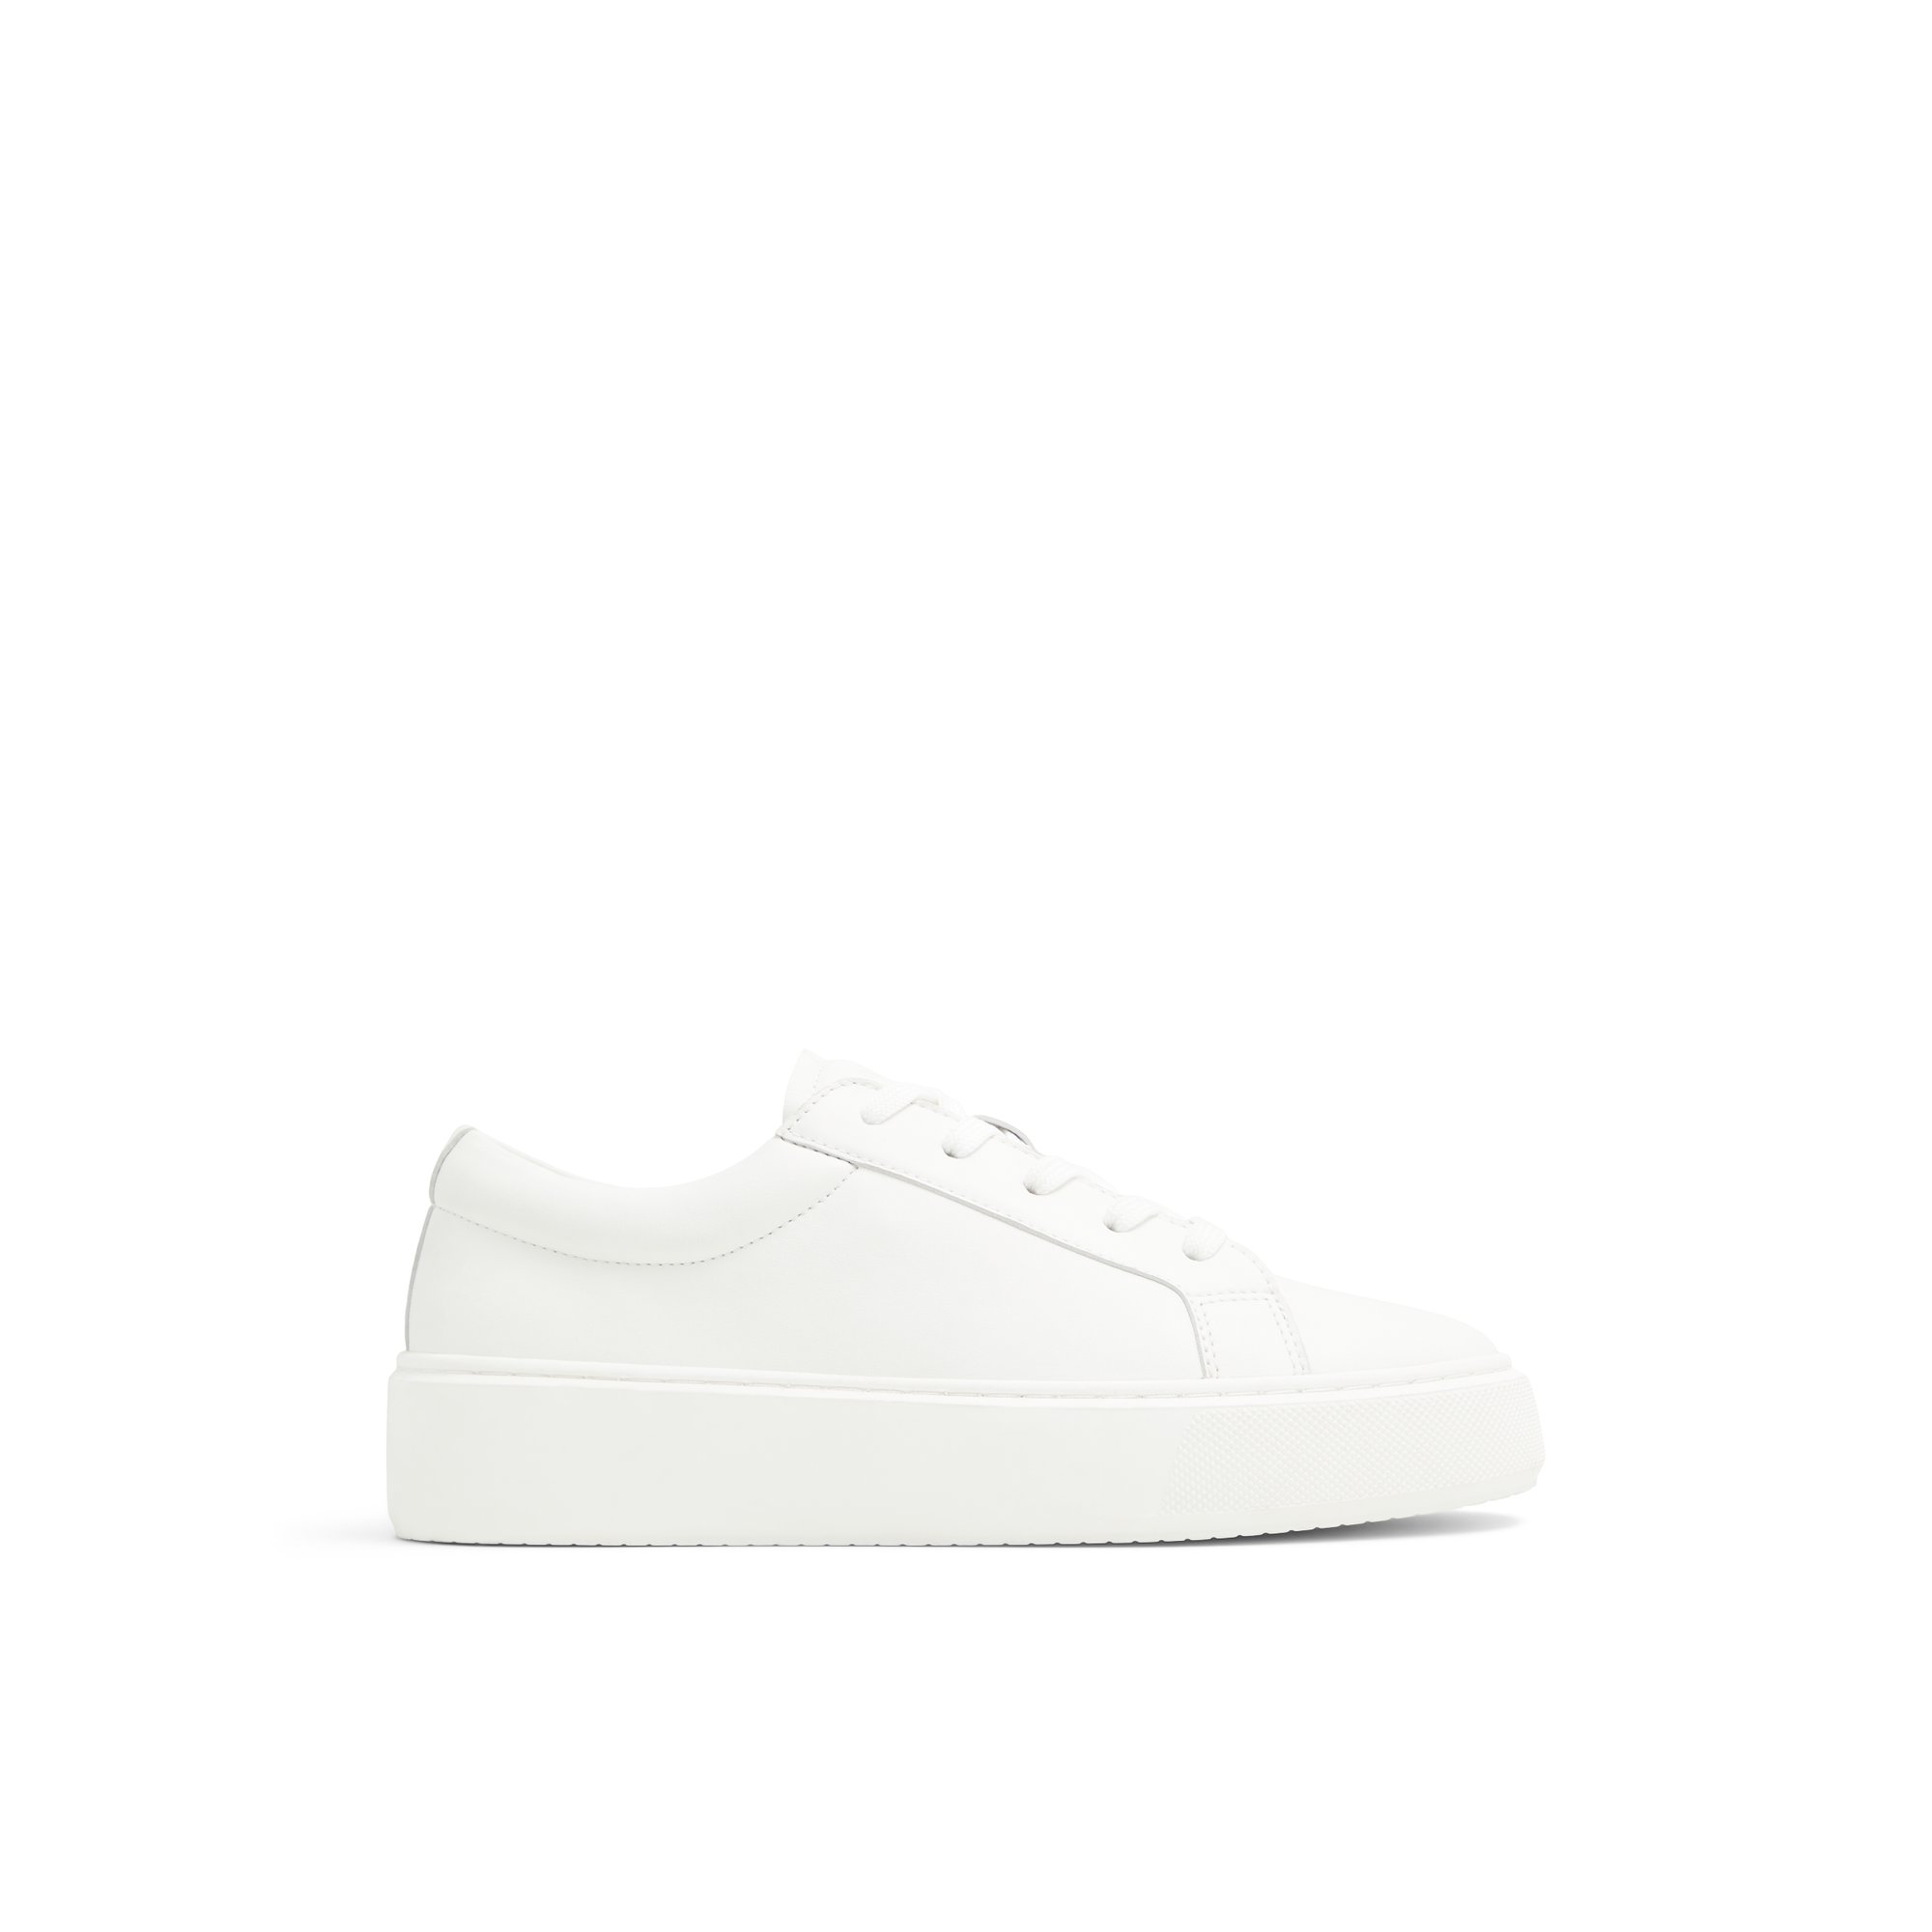 ALDO Hely - Women's Low Top Sneaker Sneakers - White